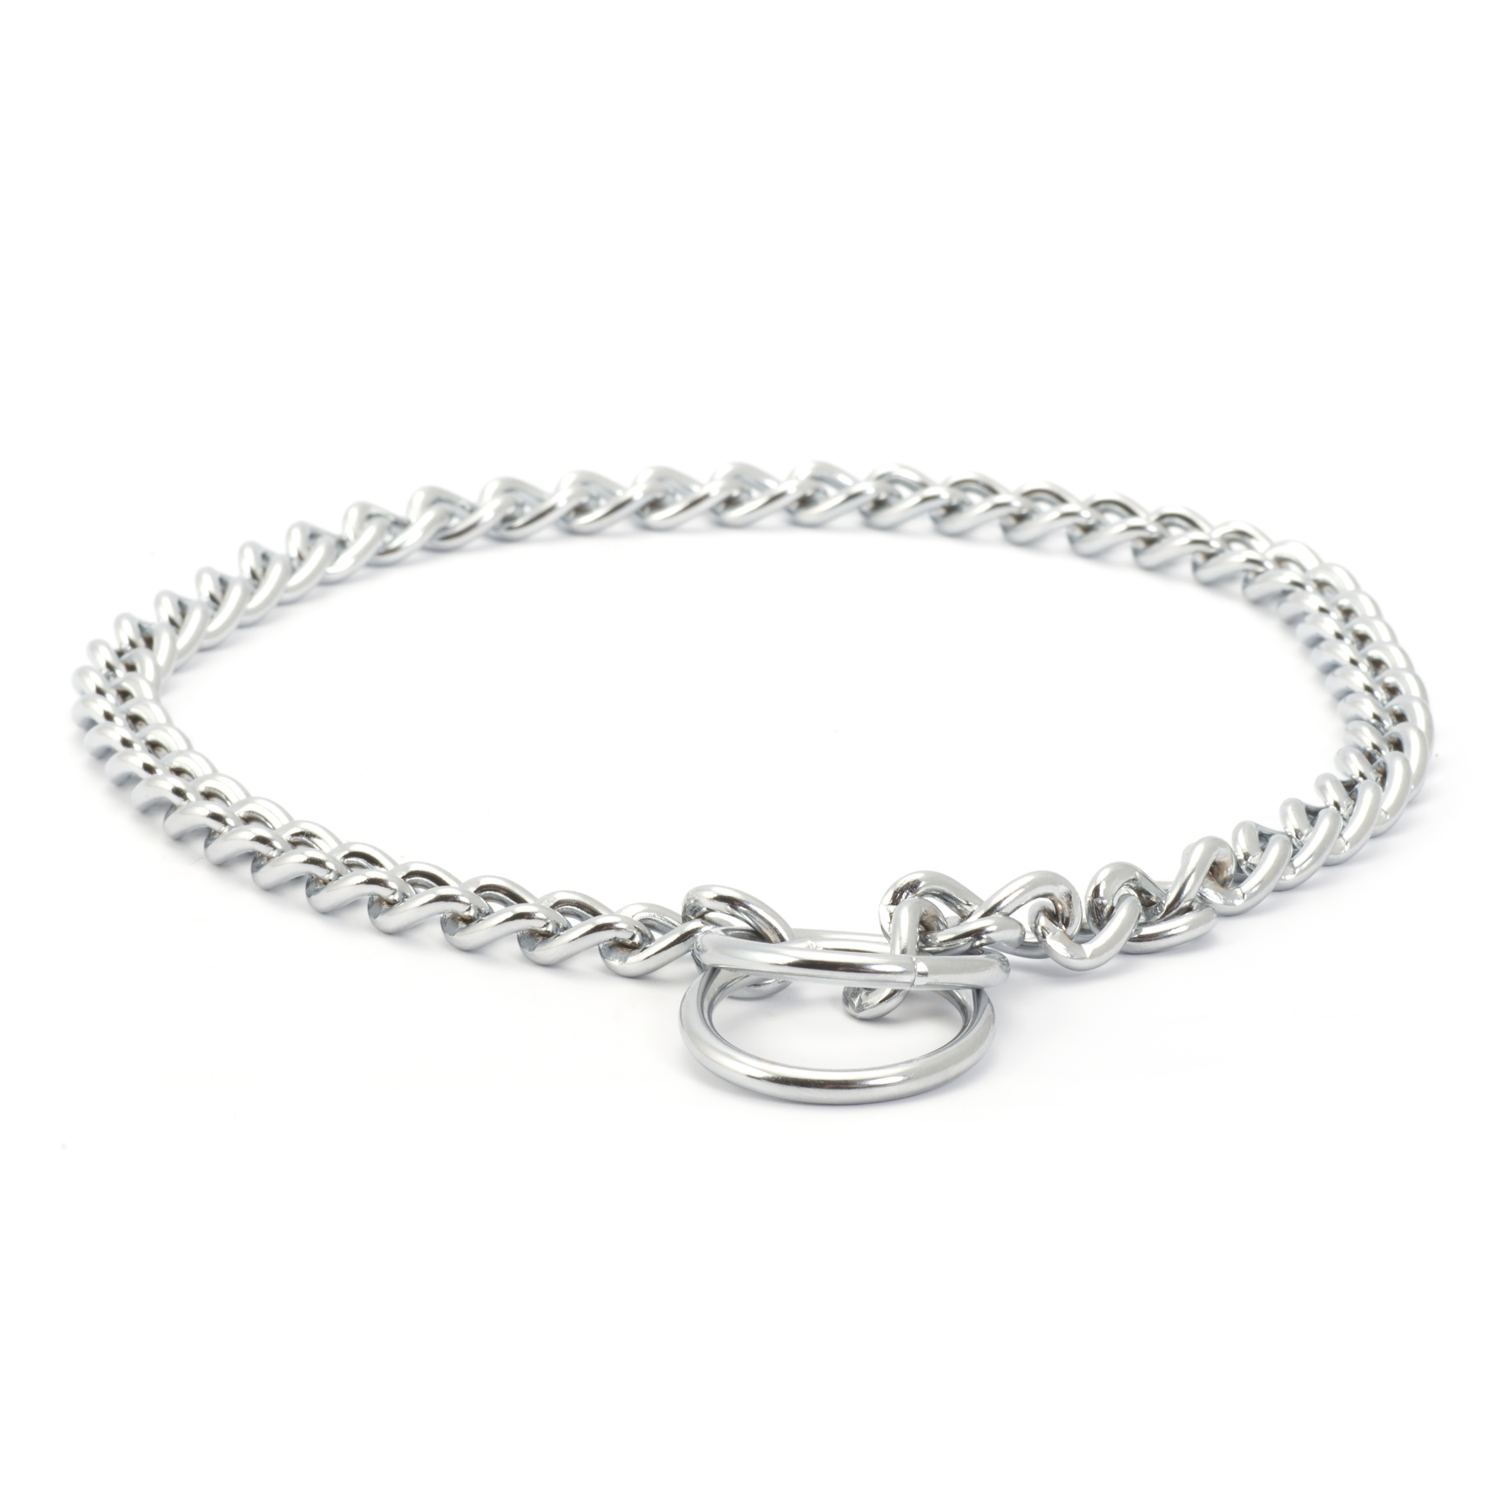 Ancol Check Chain Dog Collar - Silver / 60cm Image